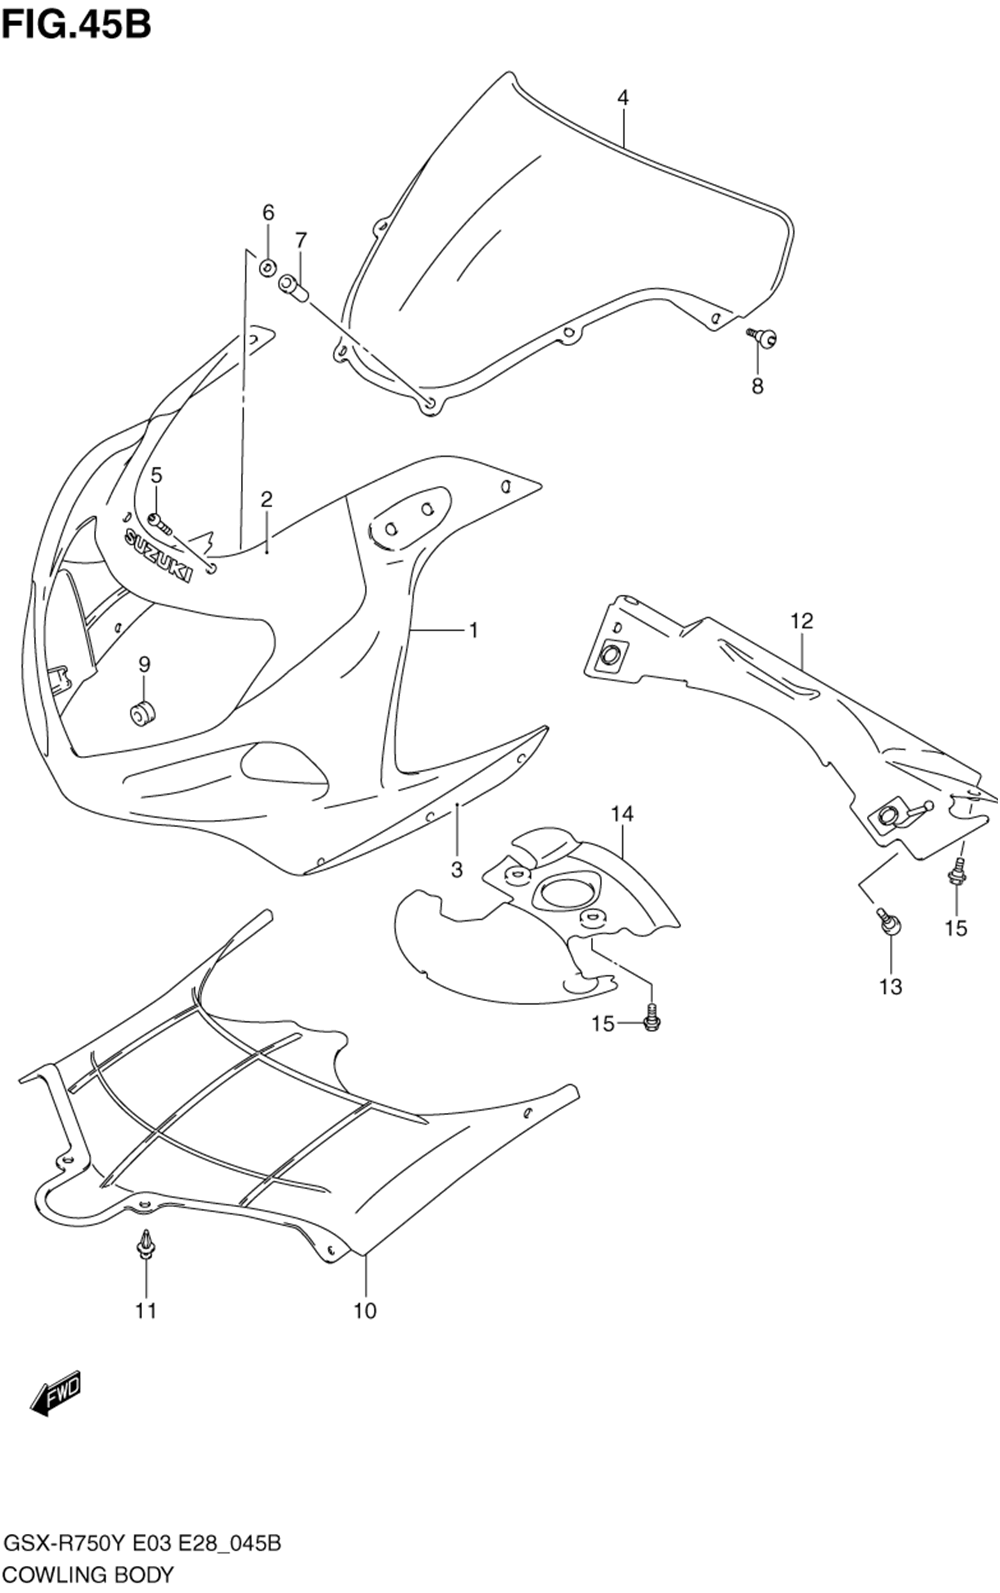 Cowling body (model k2)